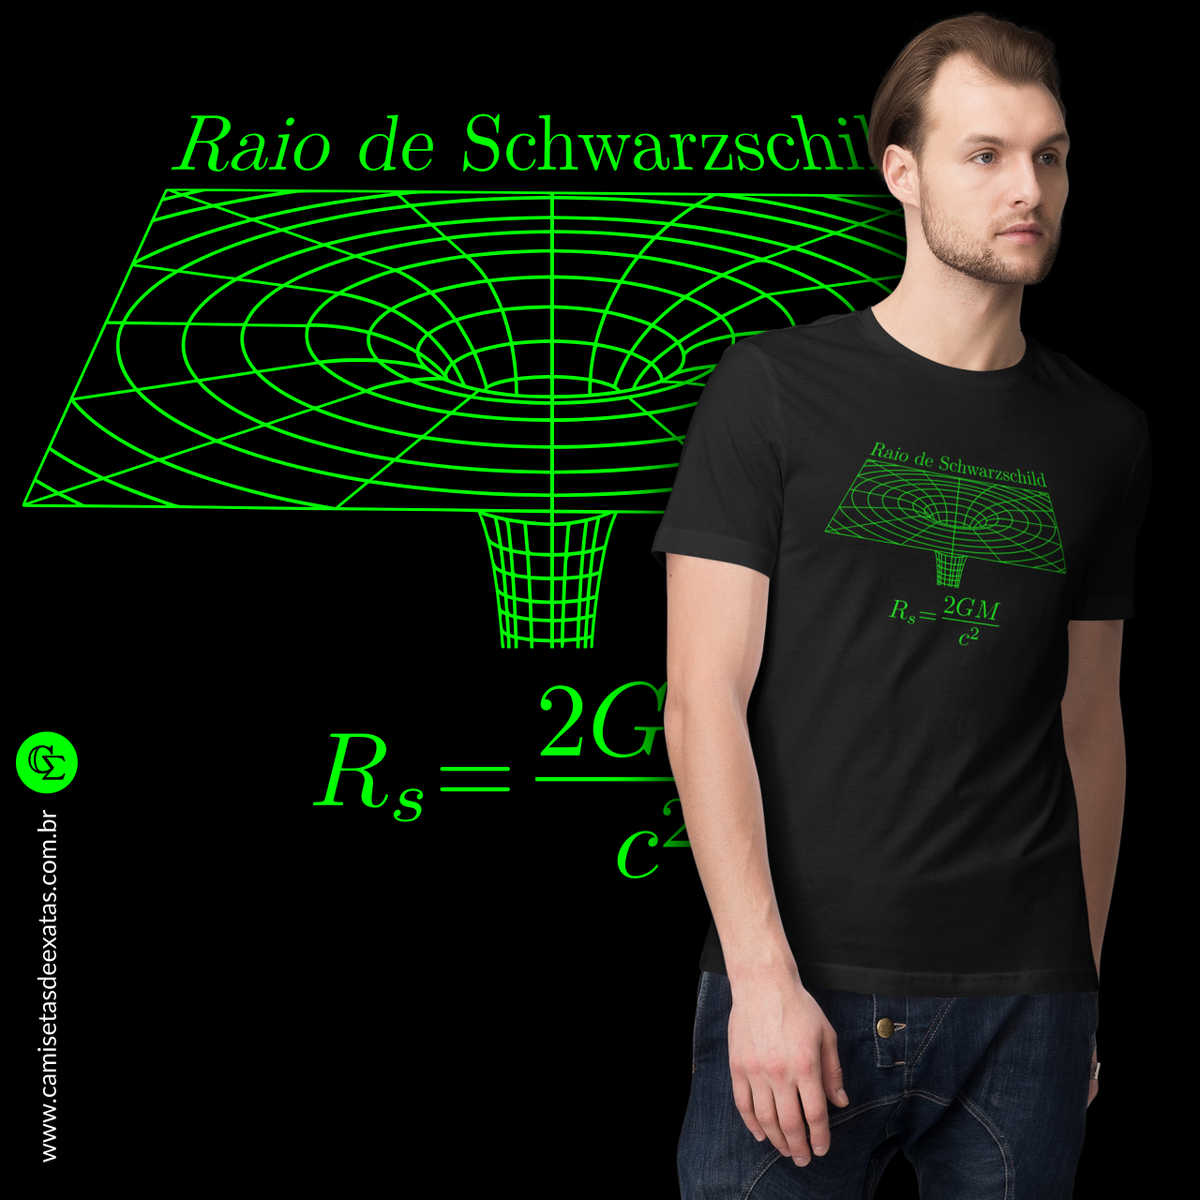 Nome do produto: RAIO DE SCHWARZSCHILD [1]